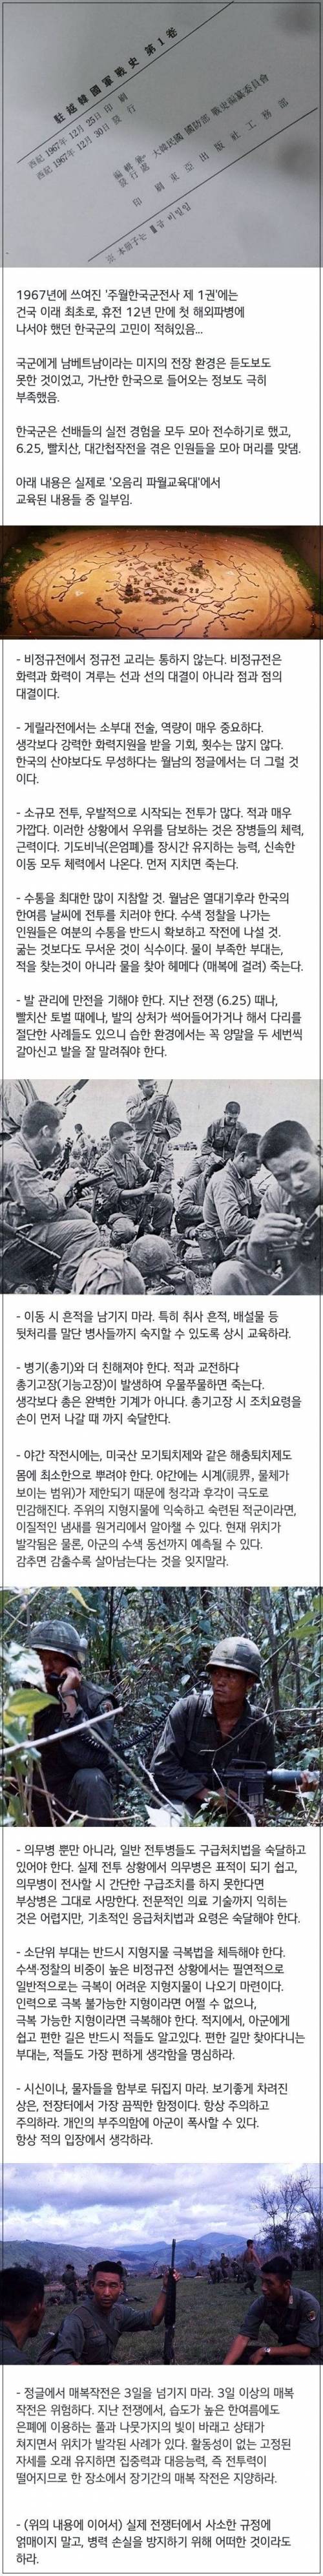 18 한국군 첫 베트남 파병 당시 교육 내용.jpg